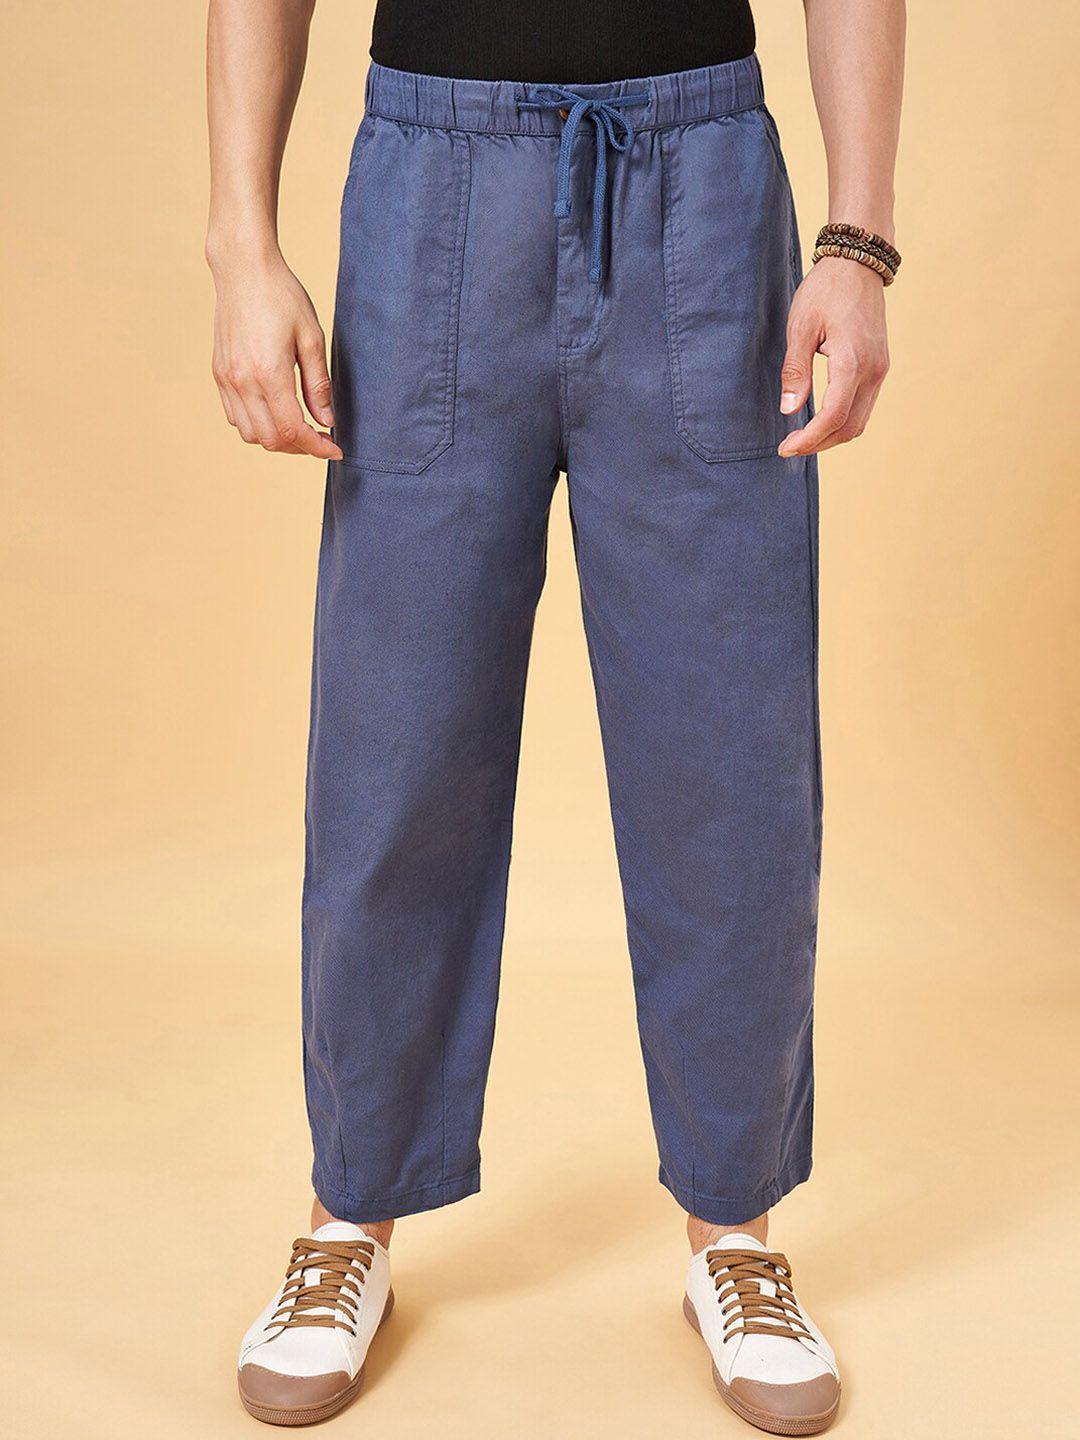 7-alt-by-pantaloons-men-mid-rise-cotton-loose-fit-trousers